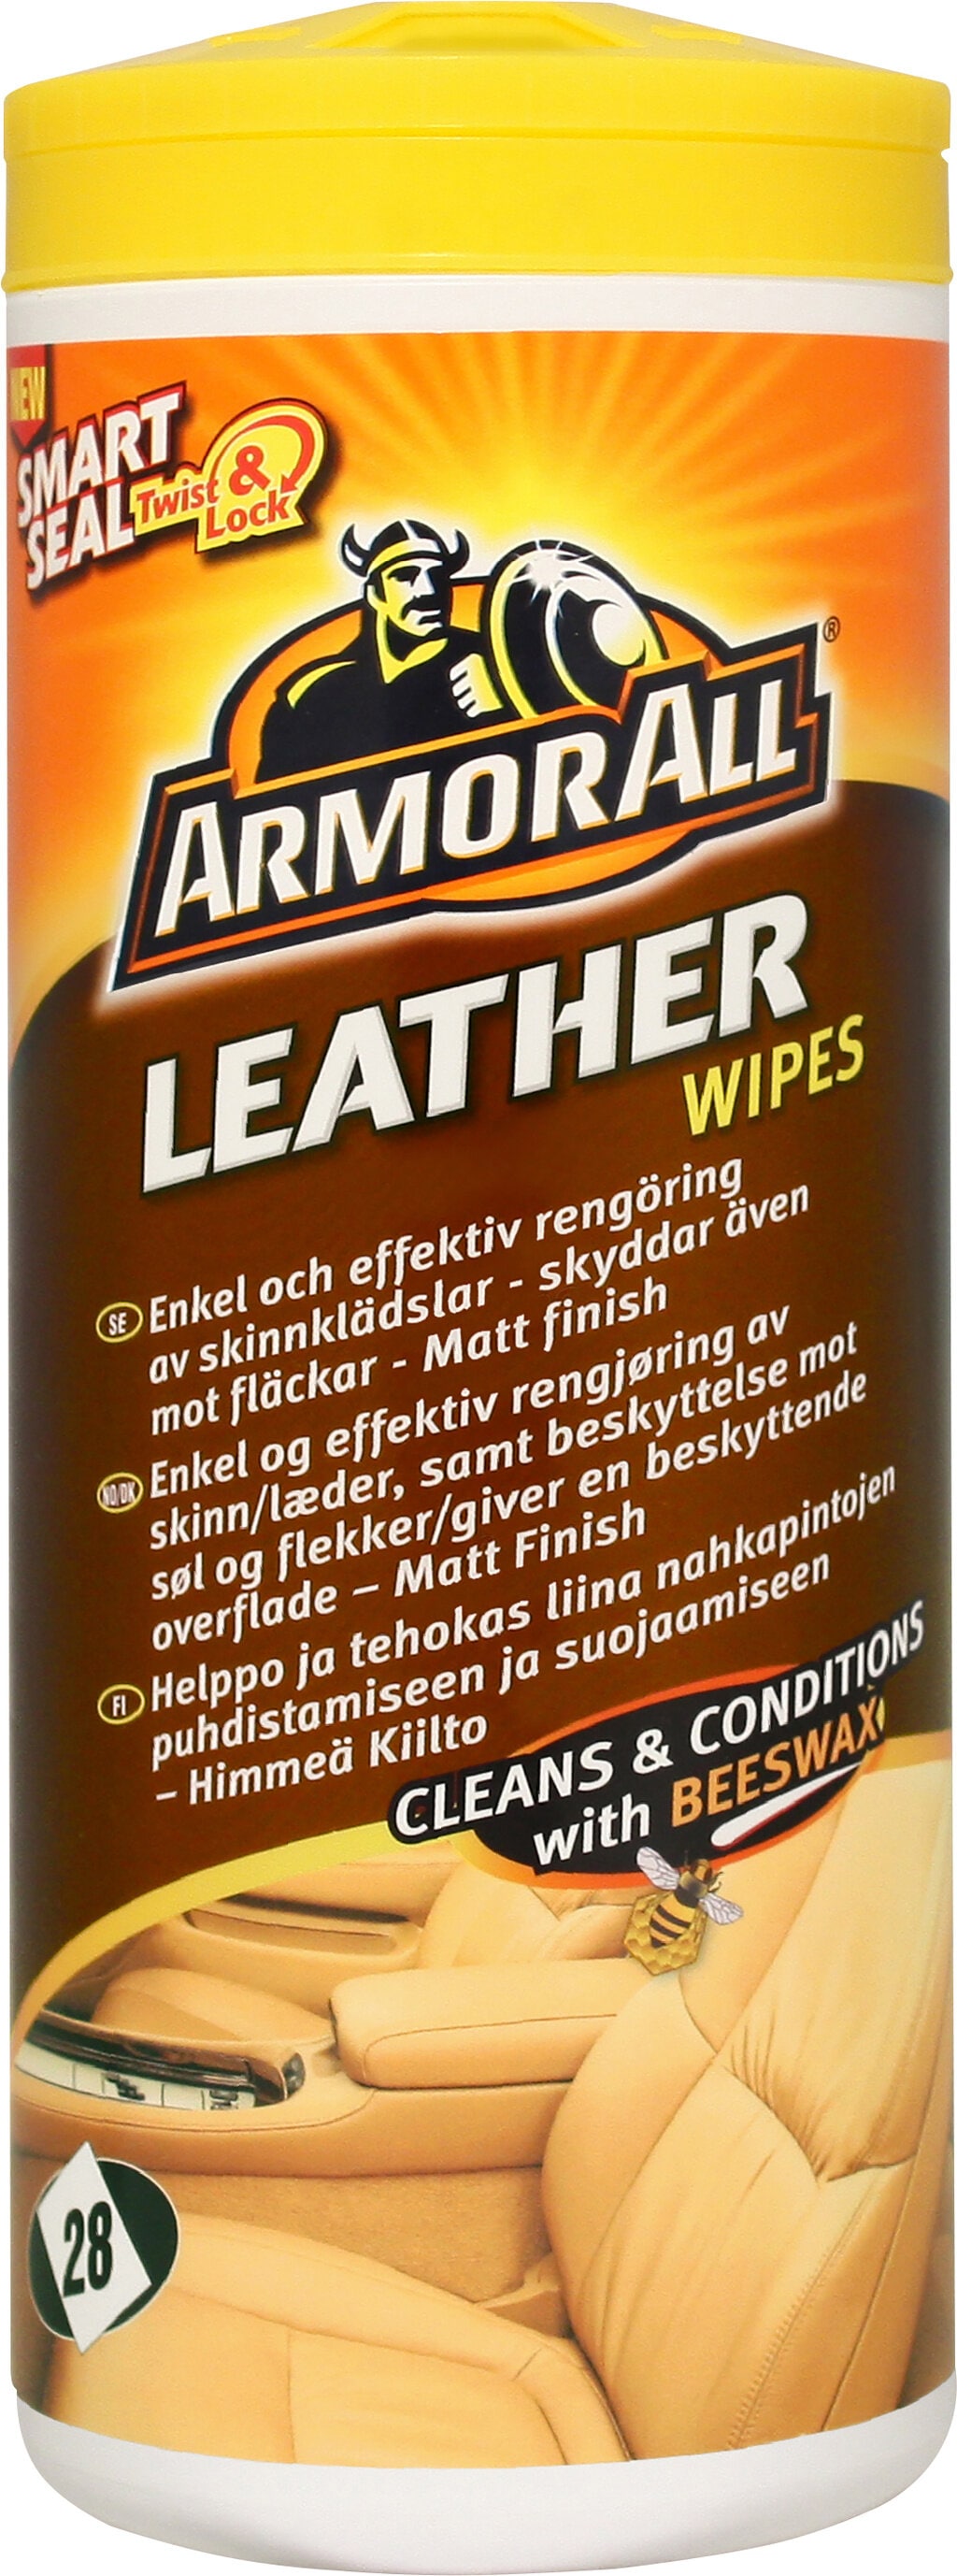 Køb Armor All Leather Wipes til læderrens, 28 stk. hos Verktygsboden